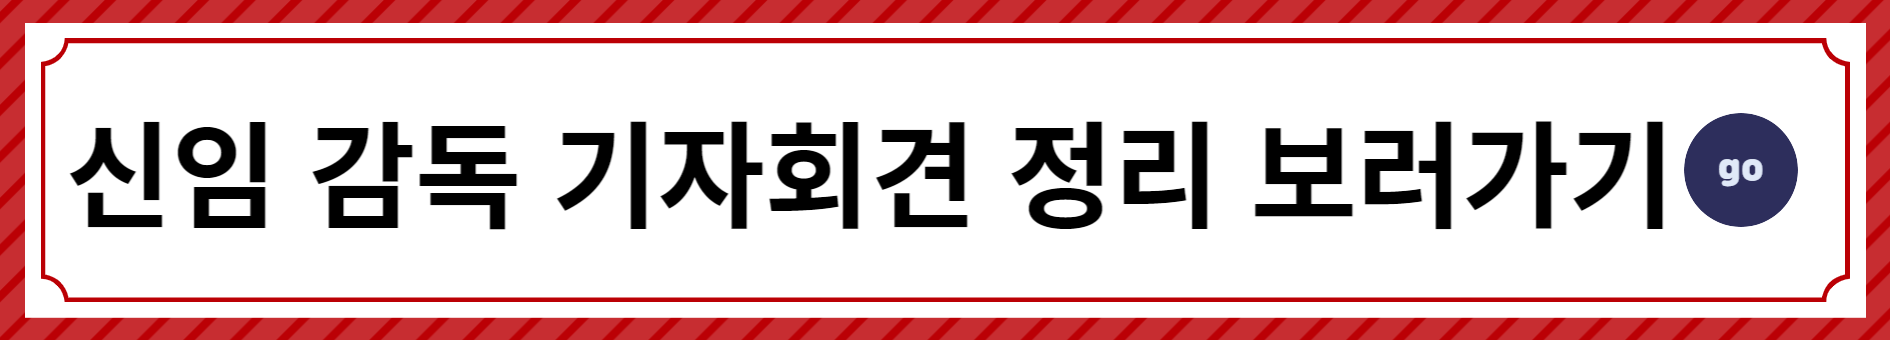 대한민국-축구국가대표-클린스만